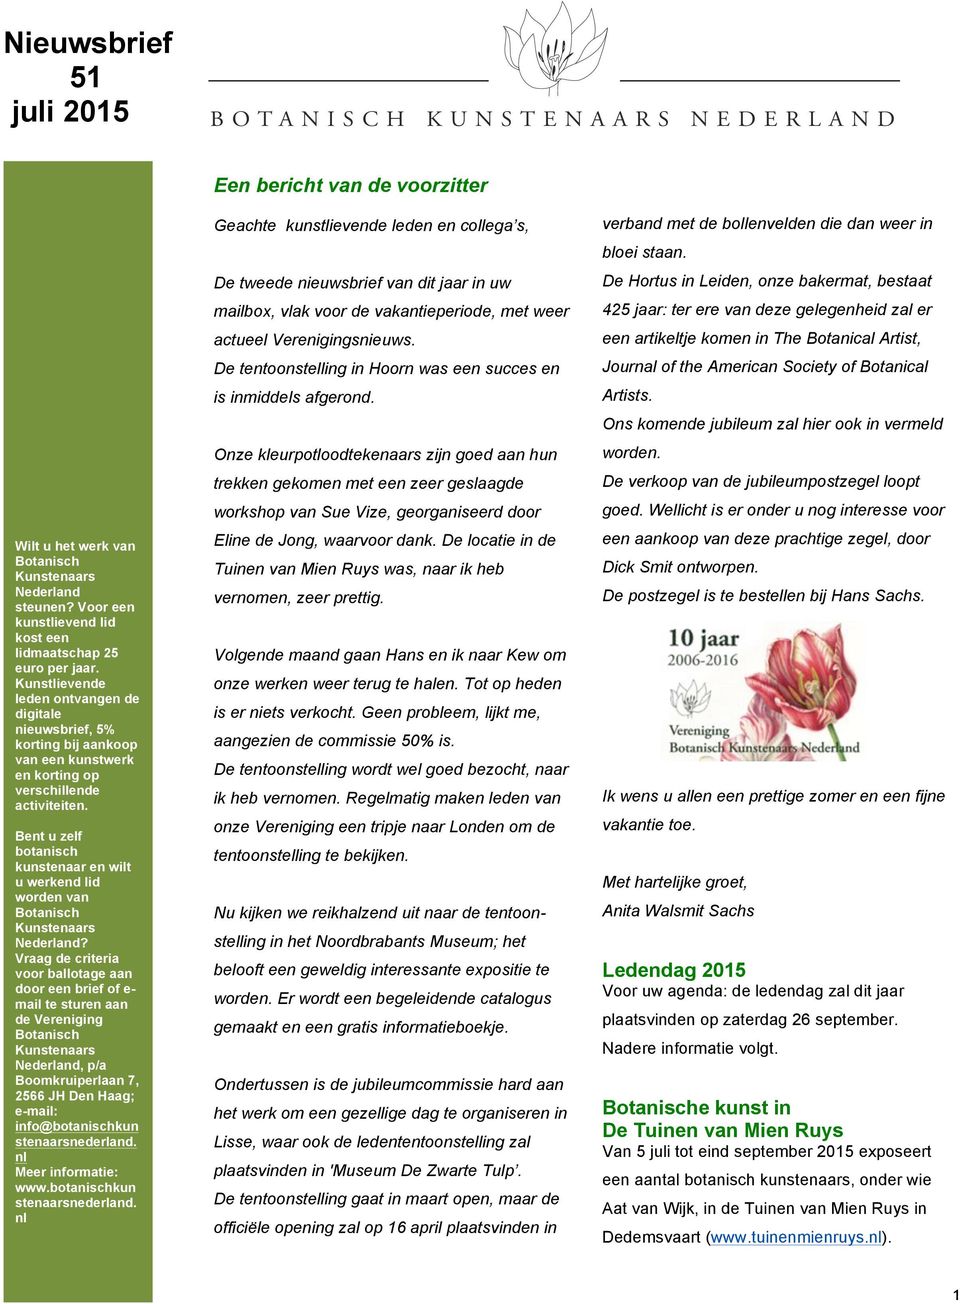 Bent u zelf botanisch kunstenaar en wilt u werkend lid worden van Botanisch Kunstenaars Nederland?